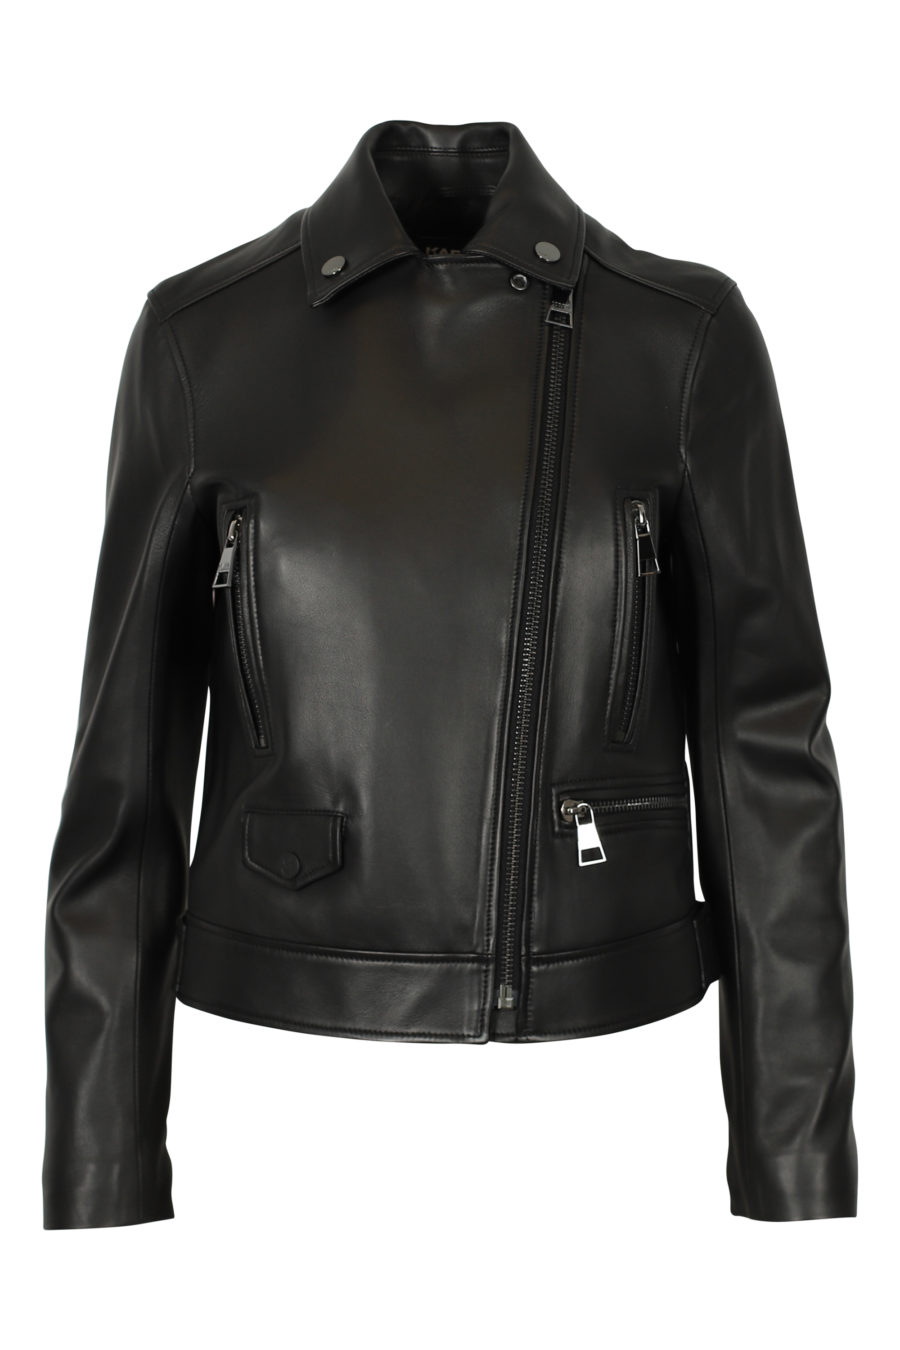 Black biker jacket with patterned back - IMG 3094